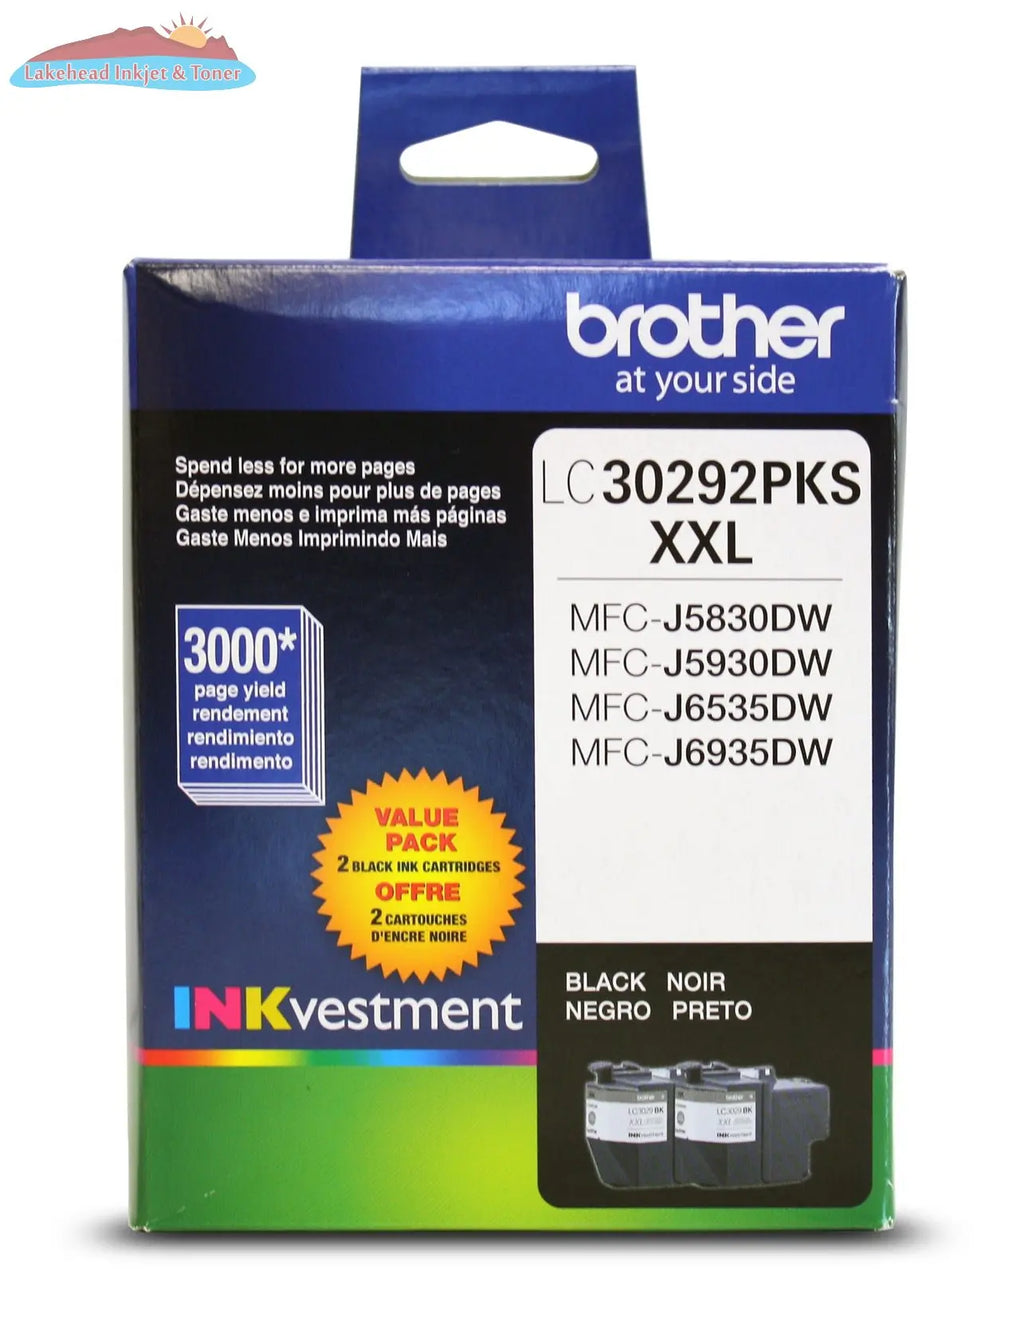 LC30292PKS 2PK BLACK INK FOR MFCJ5830DW MFCJ6535DW Brother